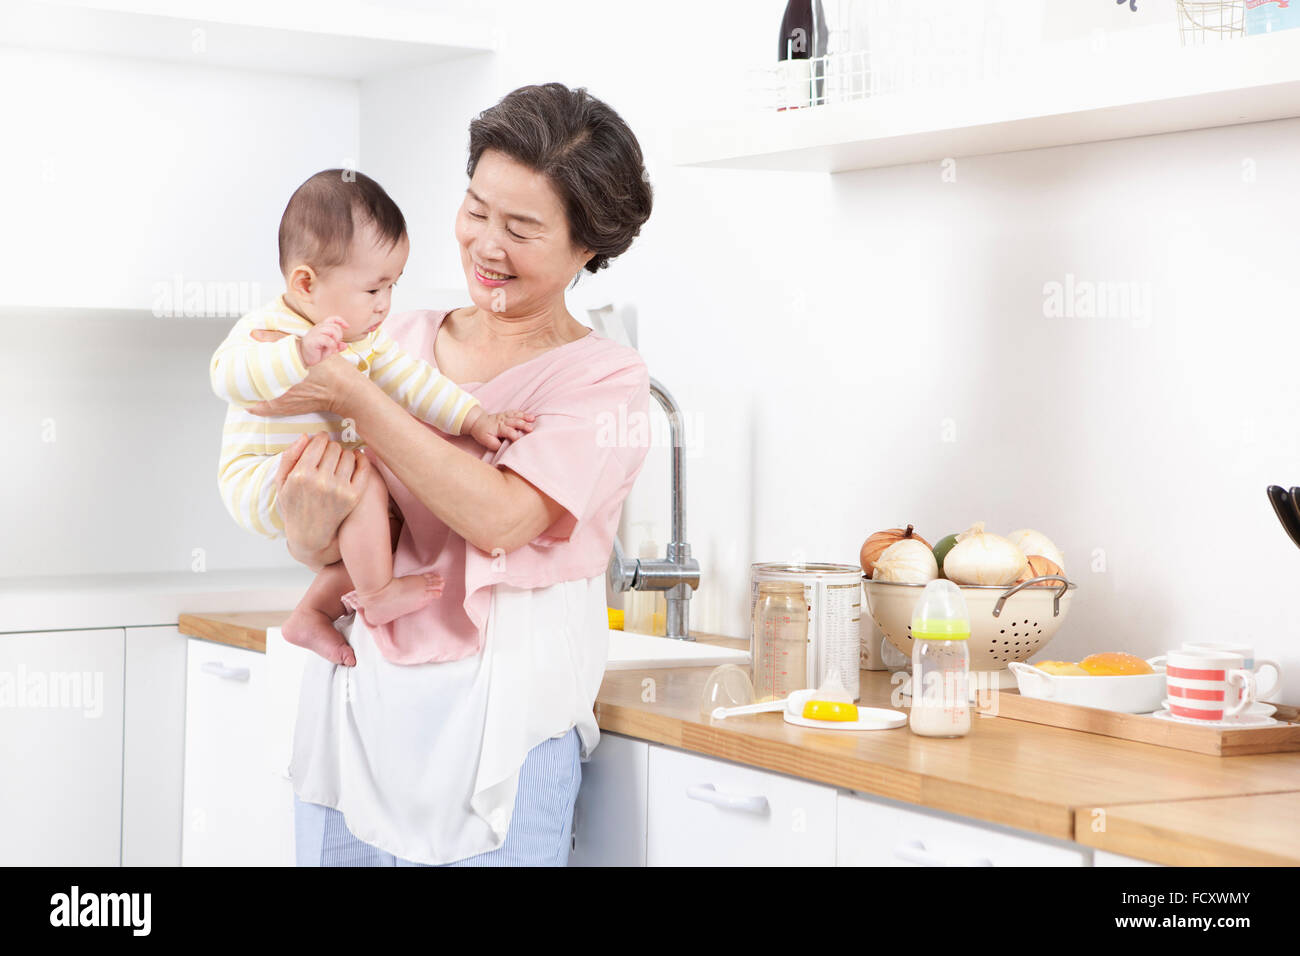 Vieille Femme jouant avec un bébé dans la cuisine Banque D'Images